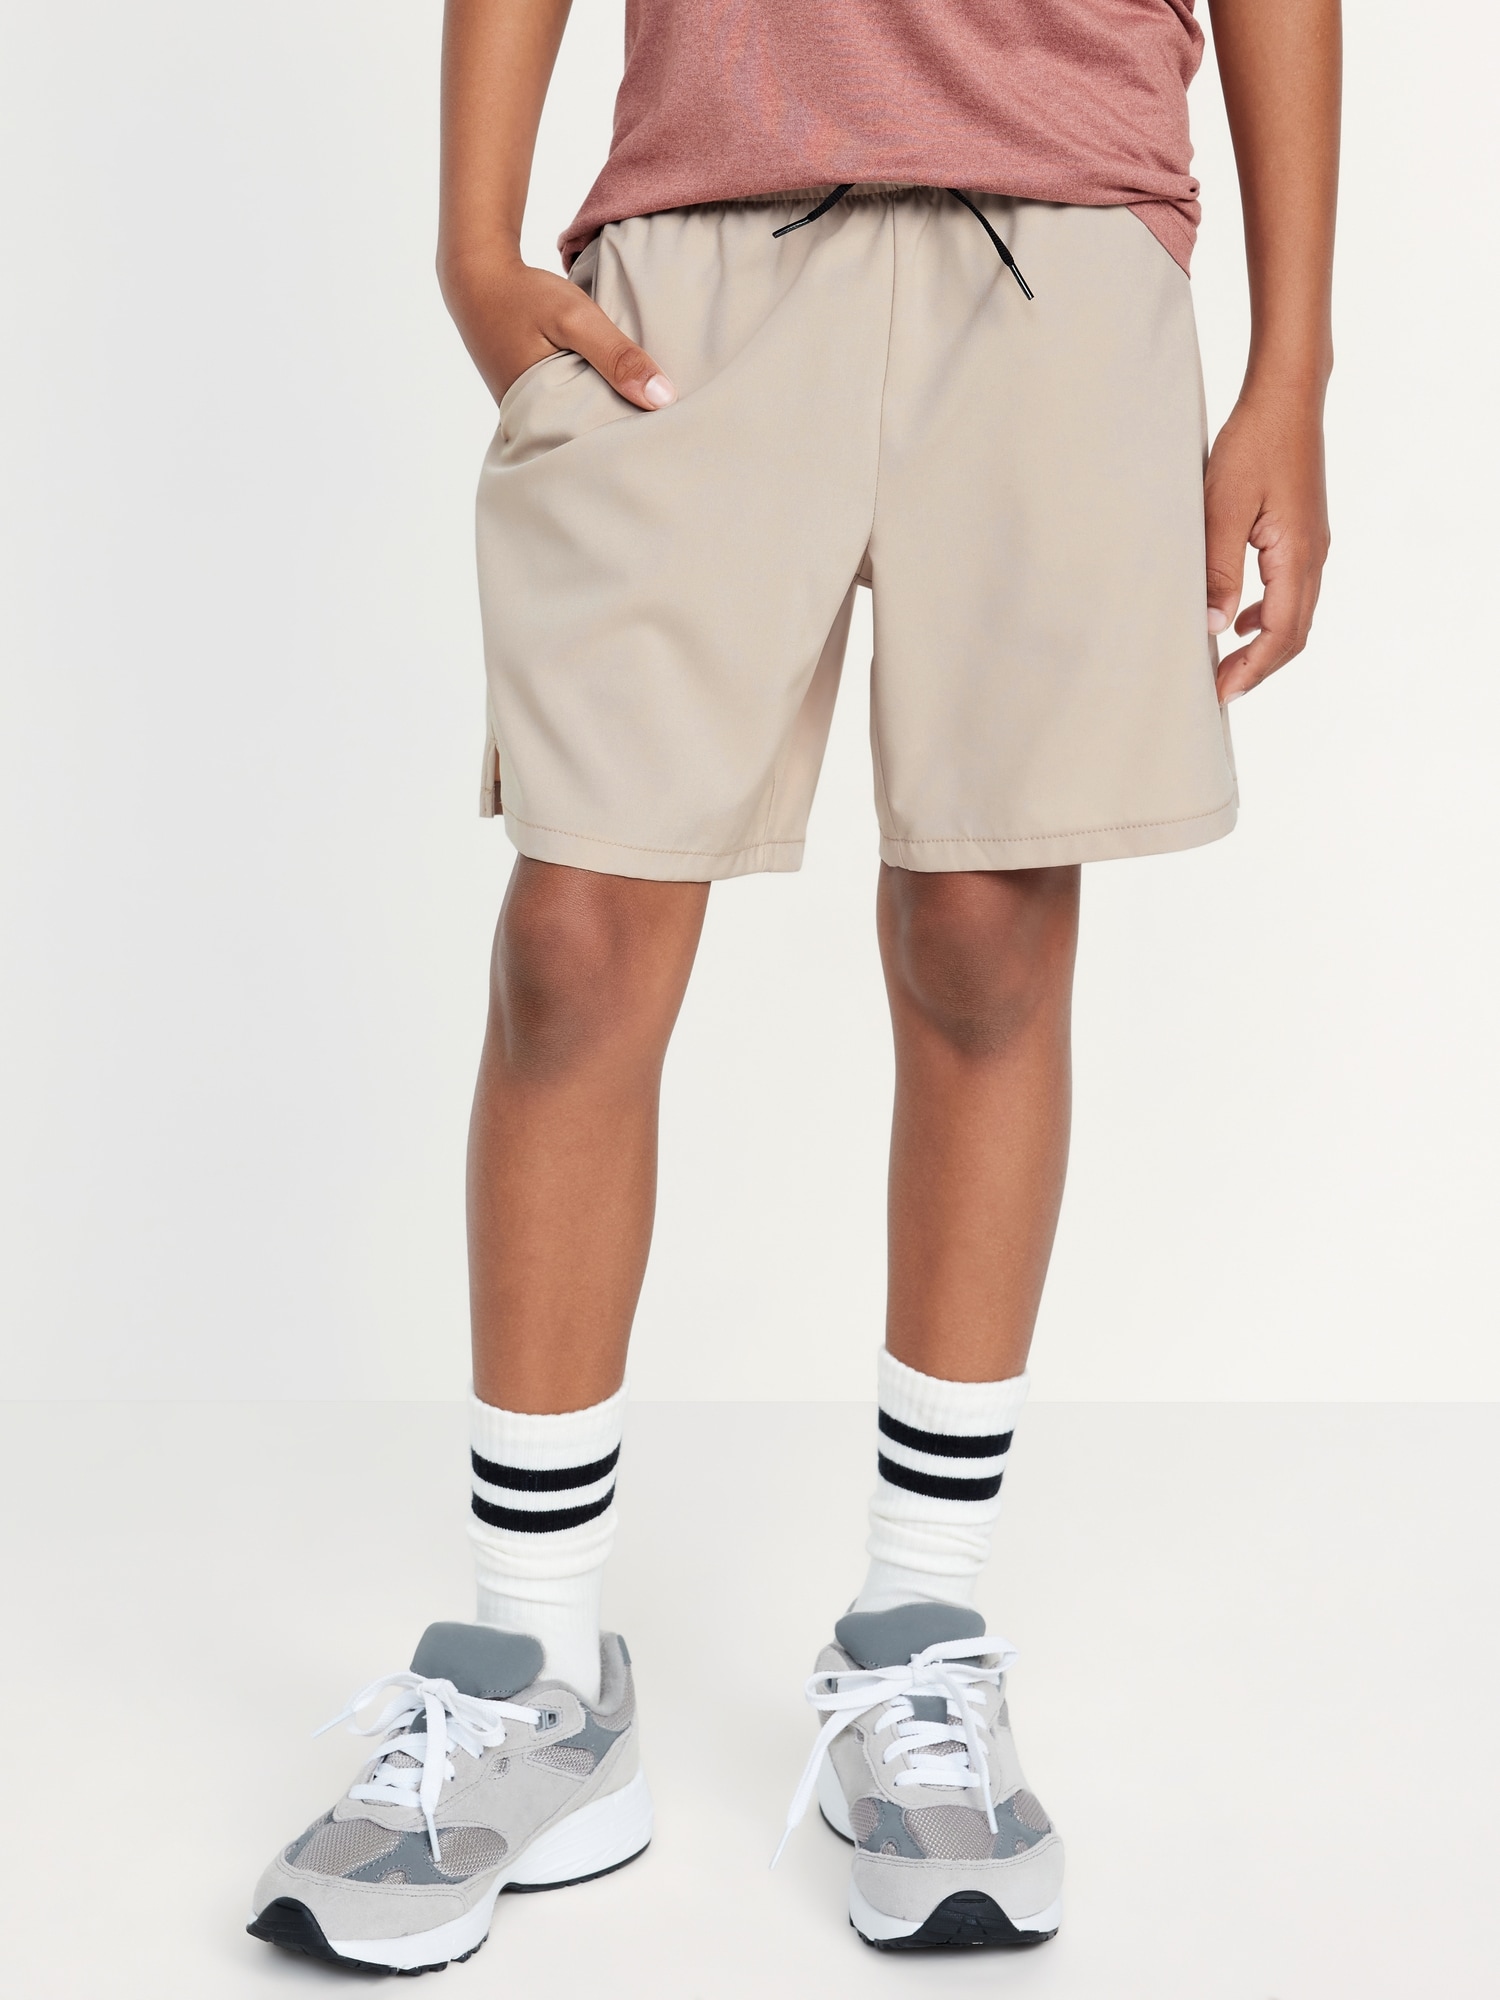 Boys Spandex Shorts | Old Navy